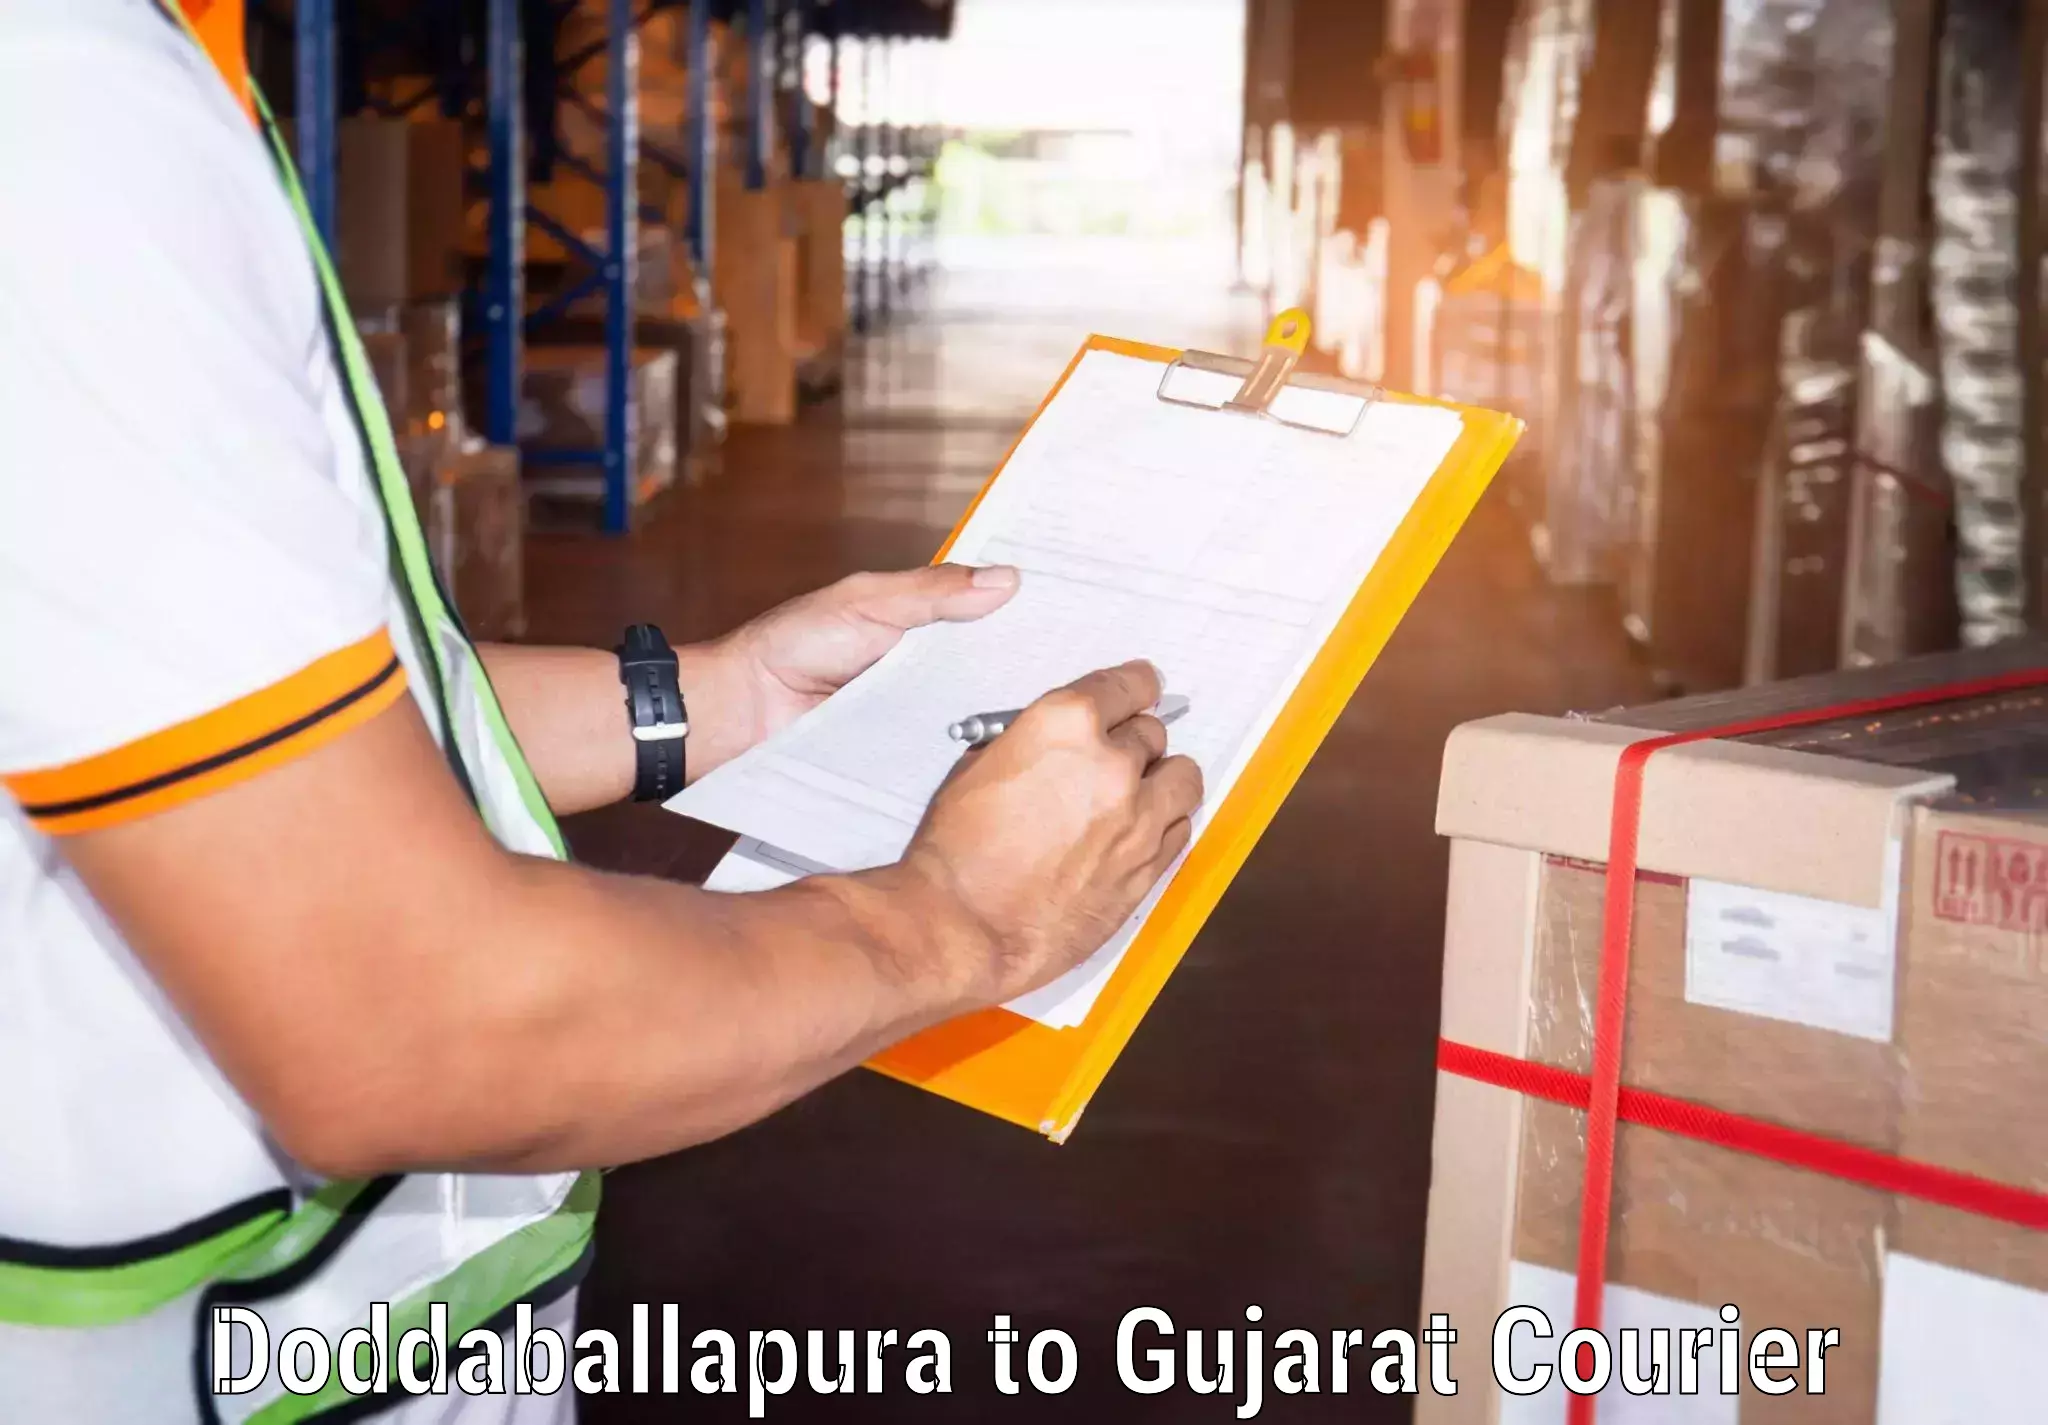 High value parcel delivery Doddaballapura to Lunawada